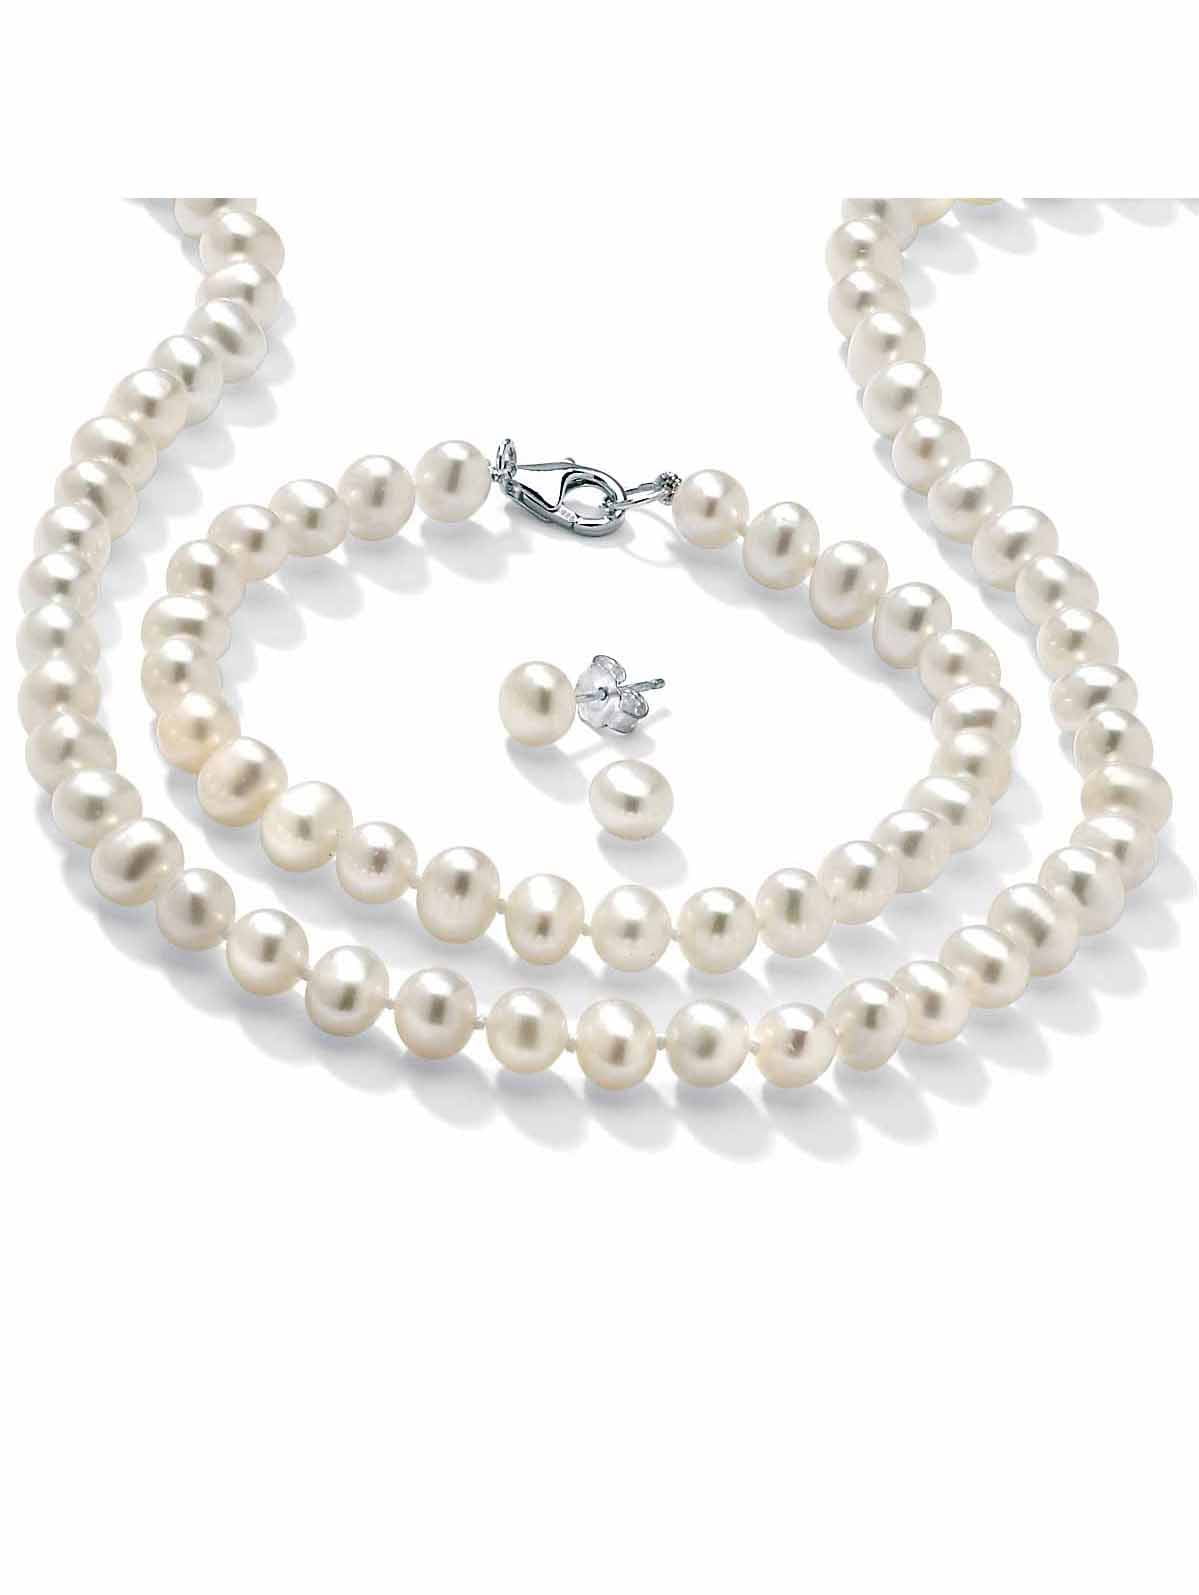 Buy Simple Kundan Big Pearl Necklace Earring And Teeka Set, Big Pearl  Necklace, Big Pearl Earrings, & Teeka Set, Big Pearl necklace Set, Big Pearl  Necklace Designs, Huge Pearl Earrings, Shop From